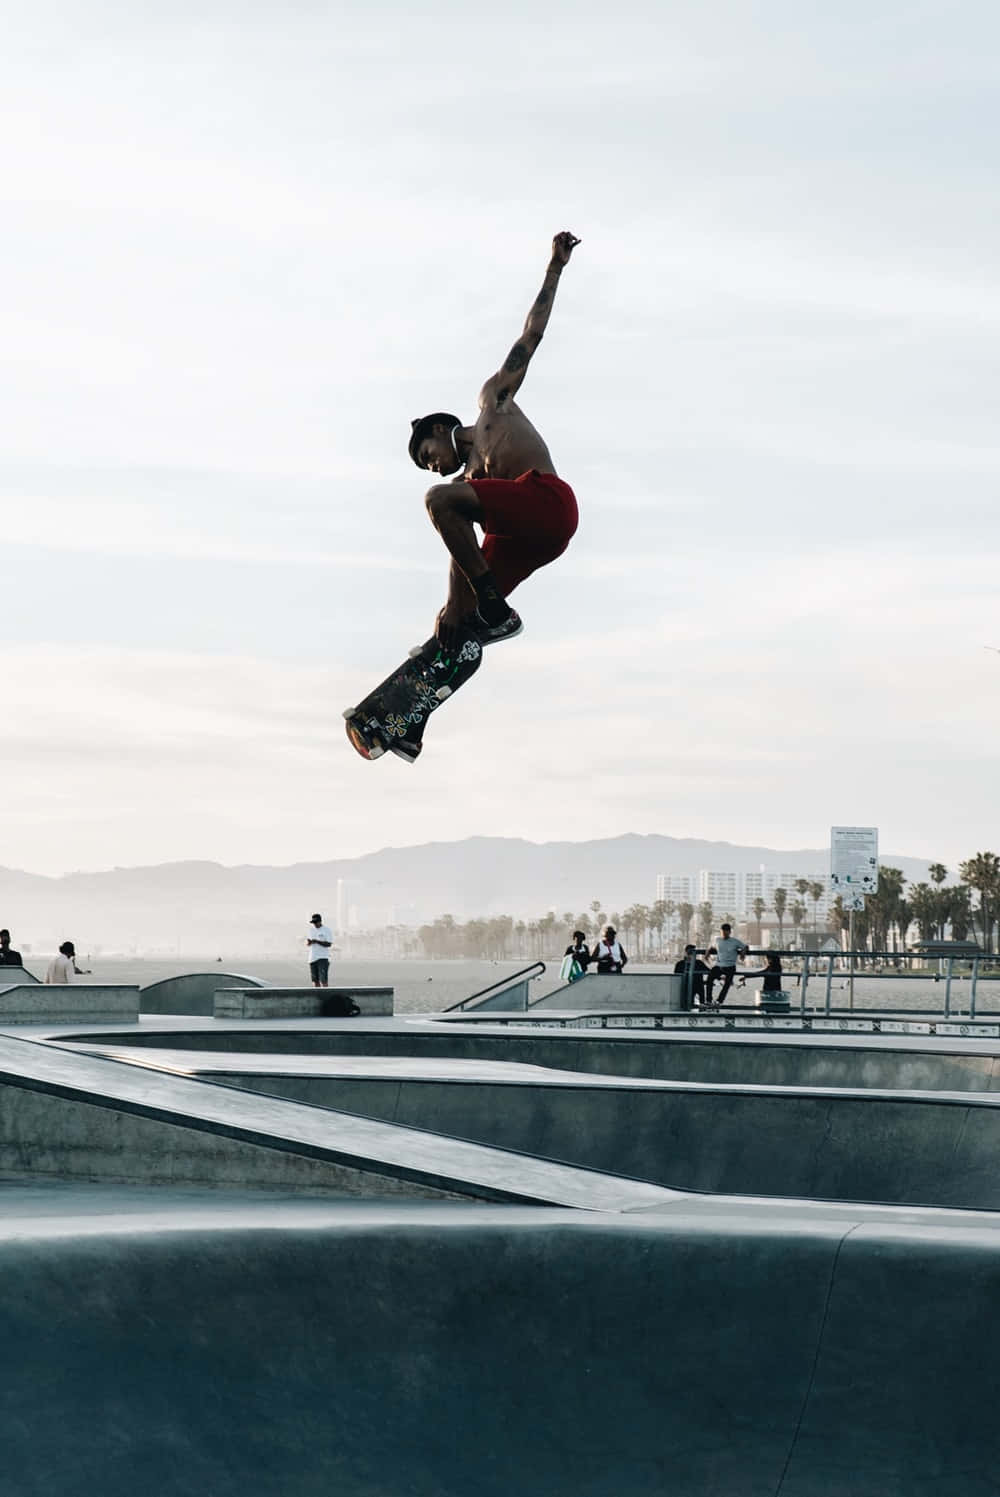 Einskateboarder In Der Luft Wallpaper